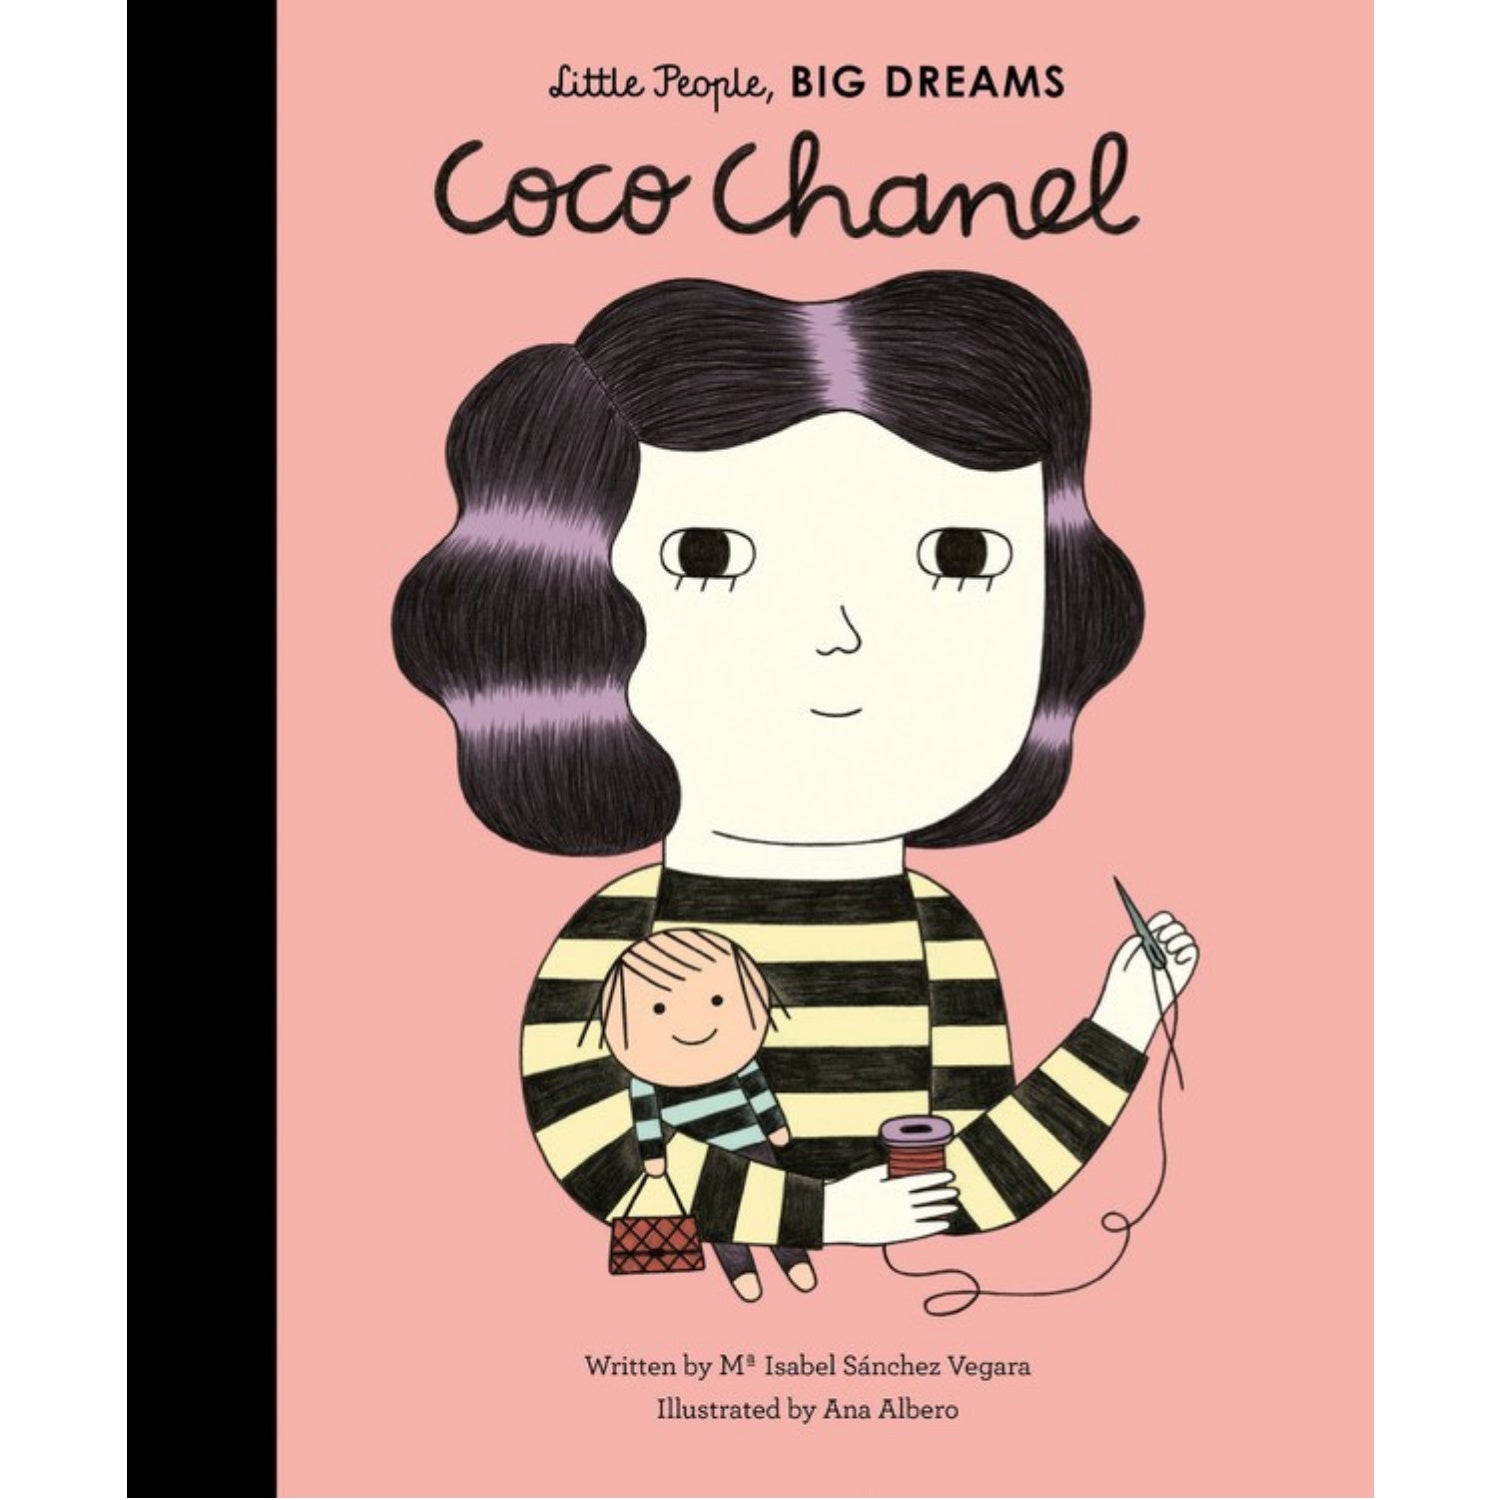 Coco Chanel, Little People, BIG DREAMS